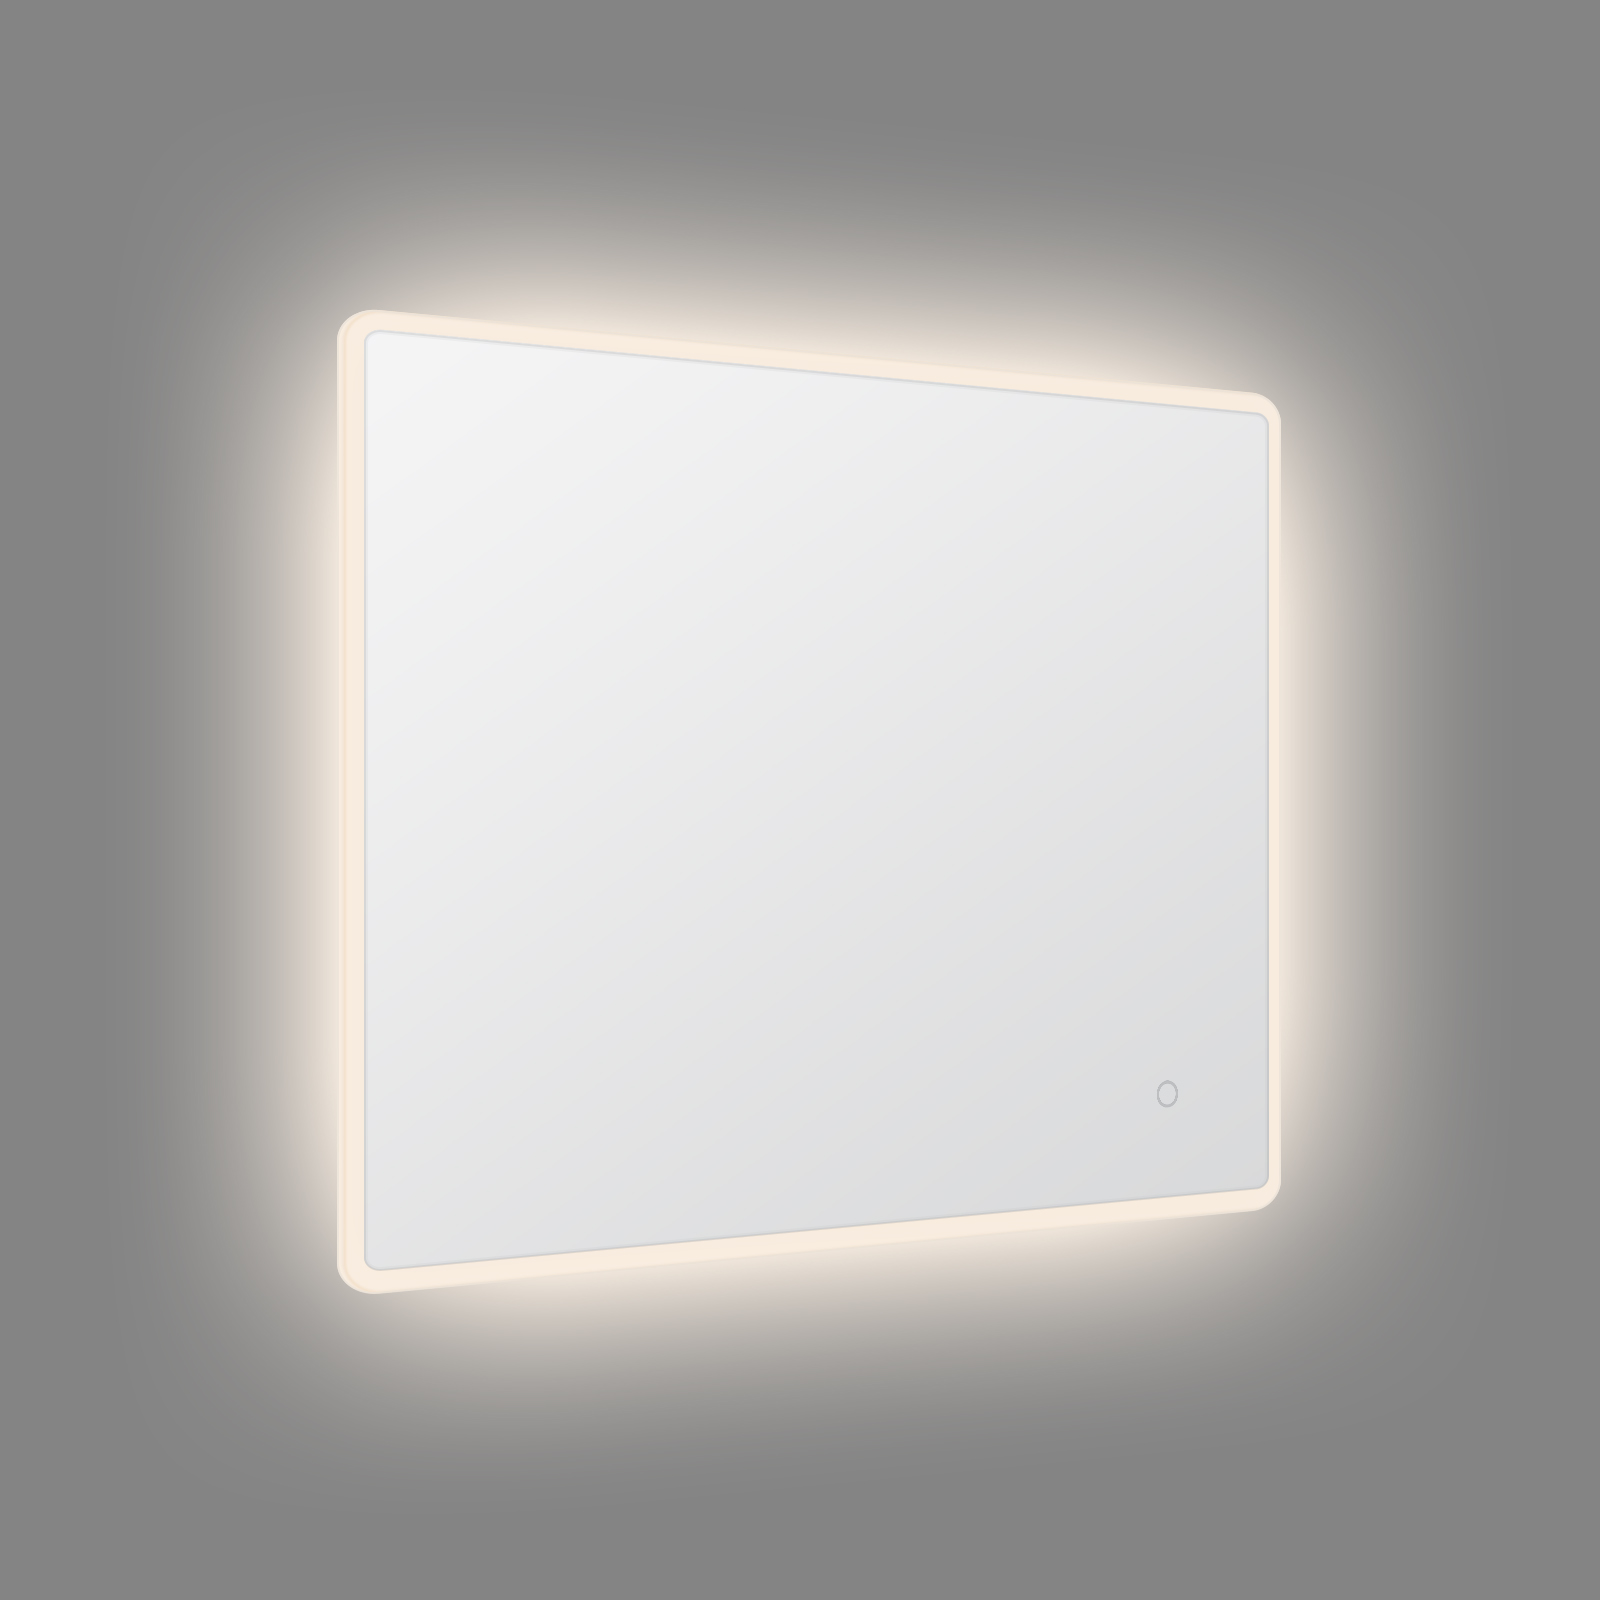 Espello LED rectangular con iluminación de borde redondo